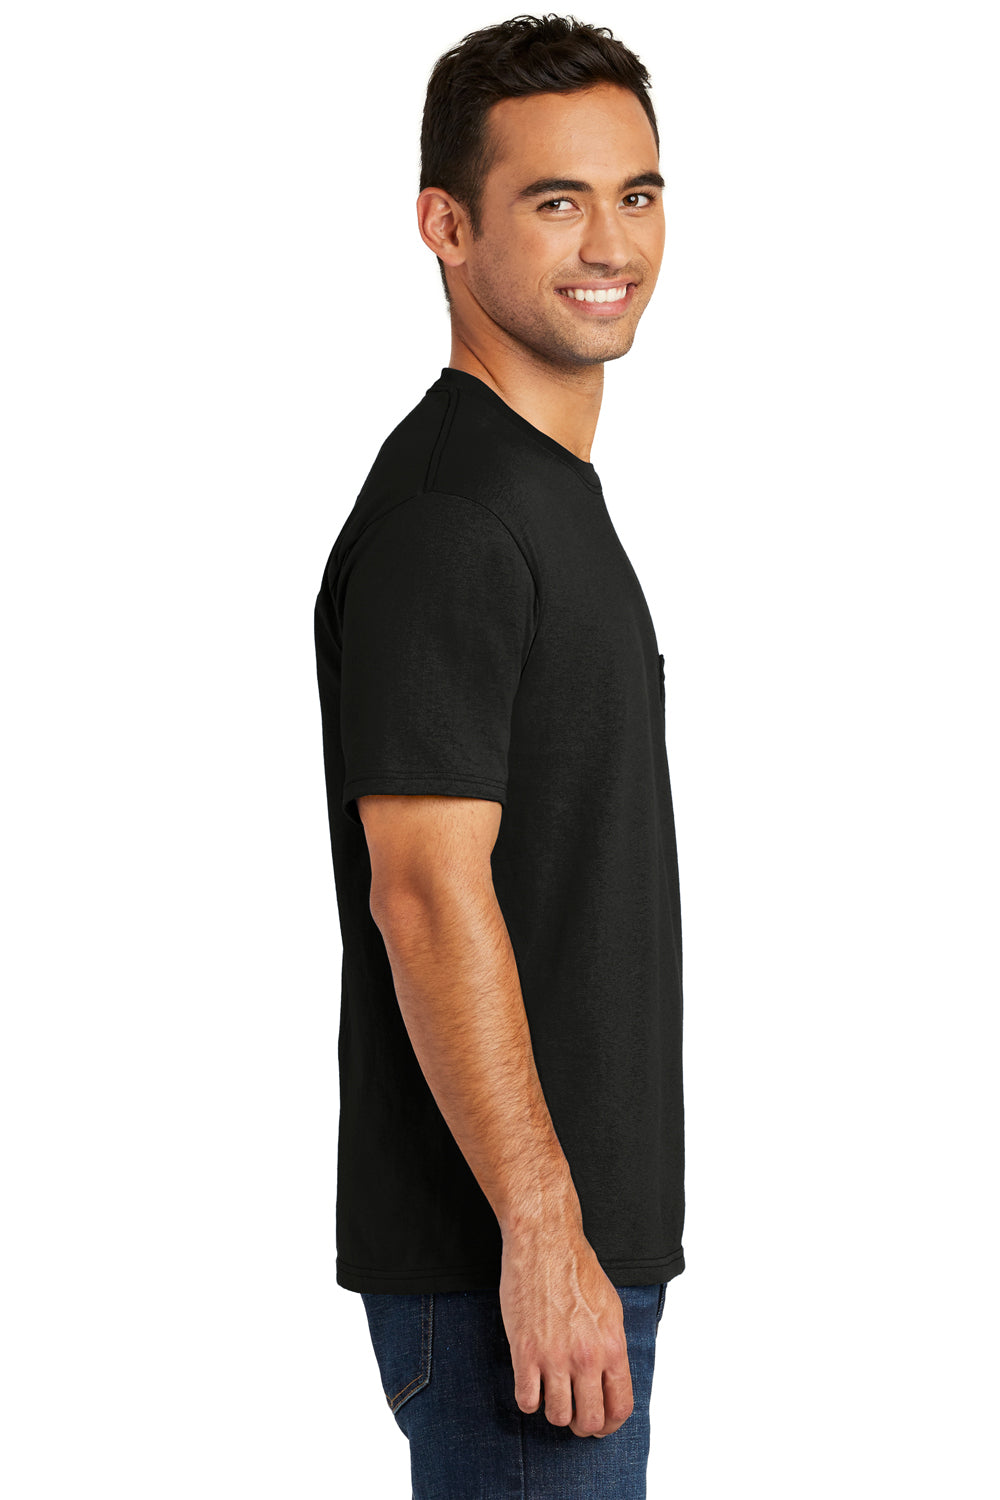 Port & Company USA100P Mens USA Made Short Sleeve Crewneck T-Shirt w/ Pocket Black Side